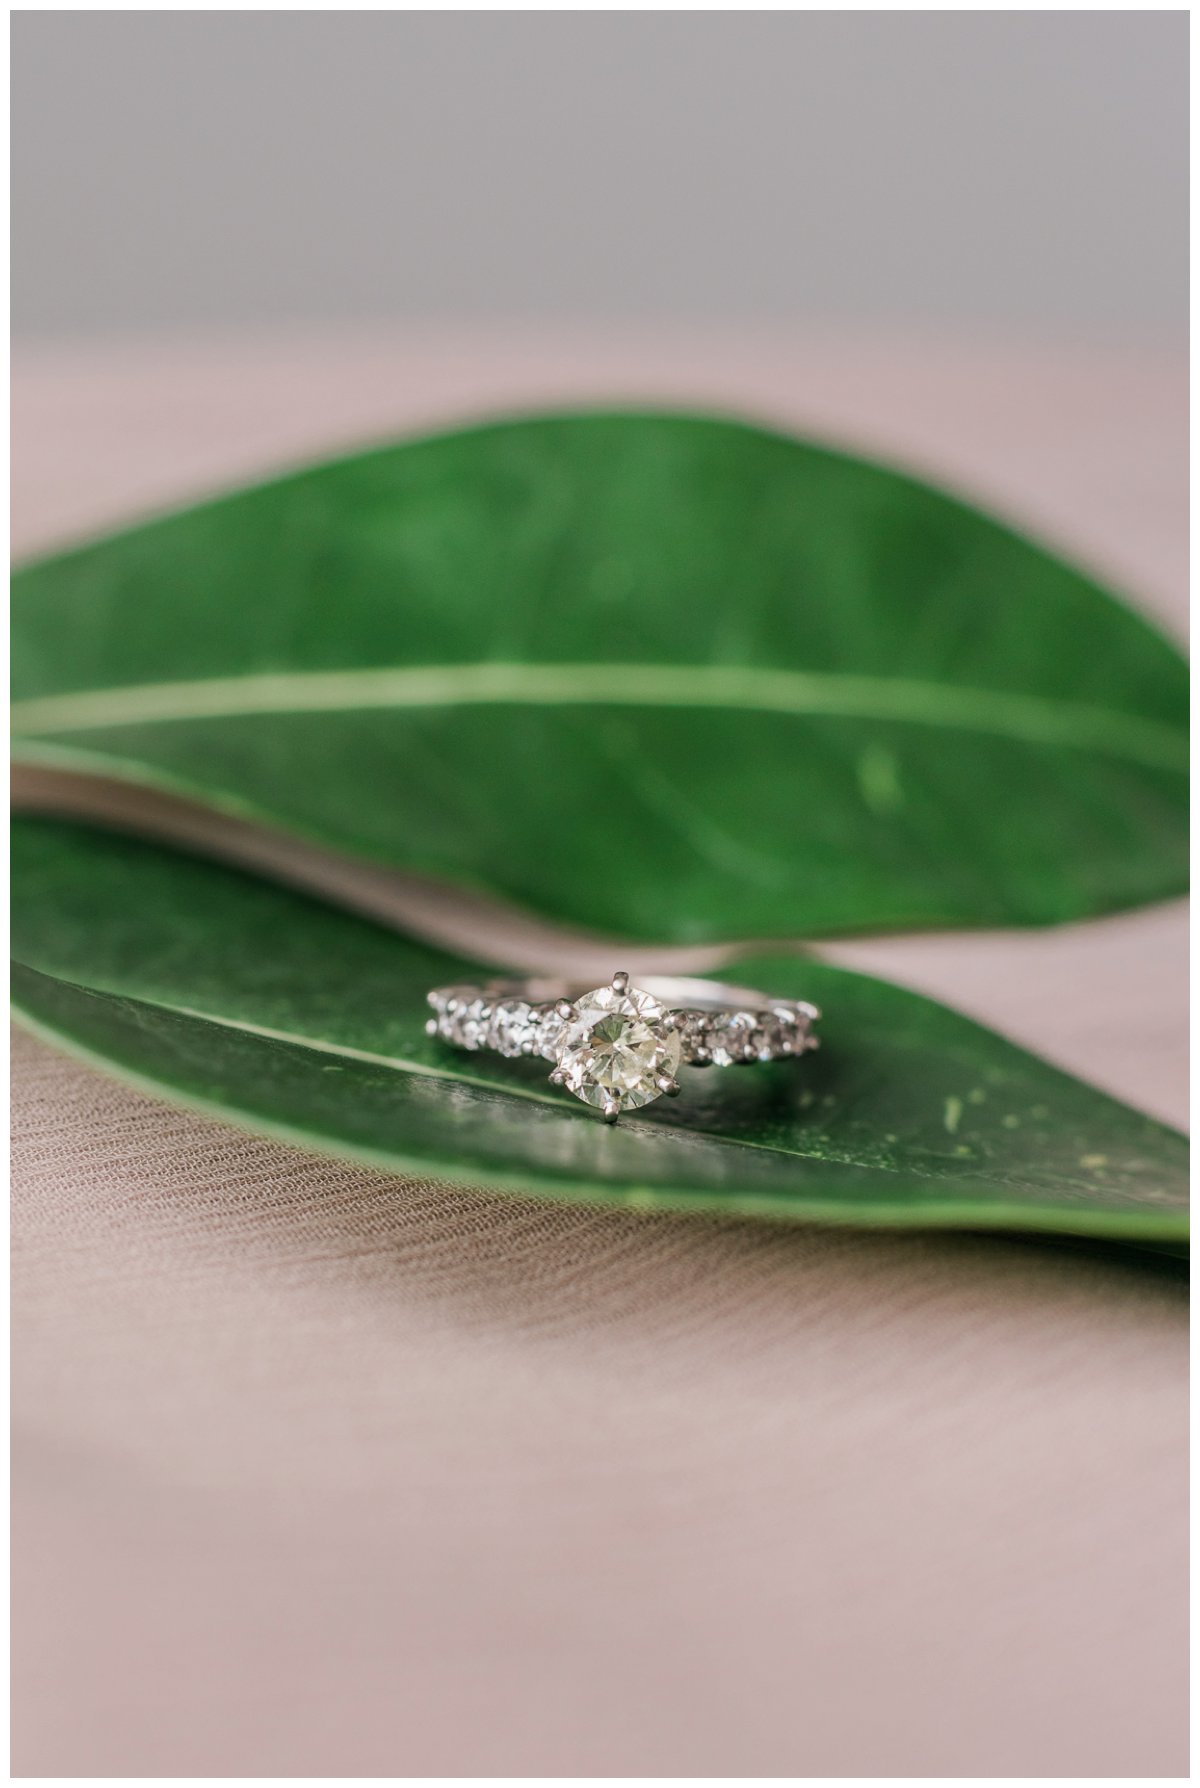 wedding ring on a leaf in islamorada florida keys